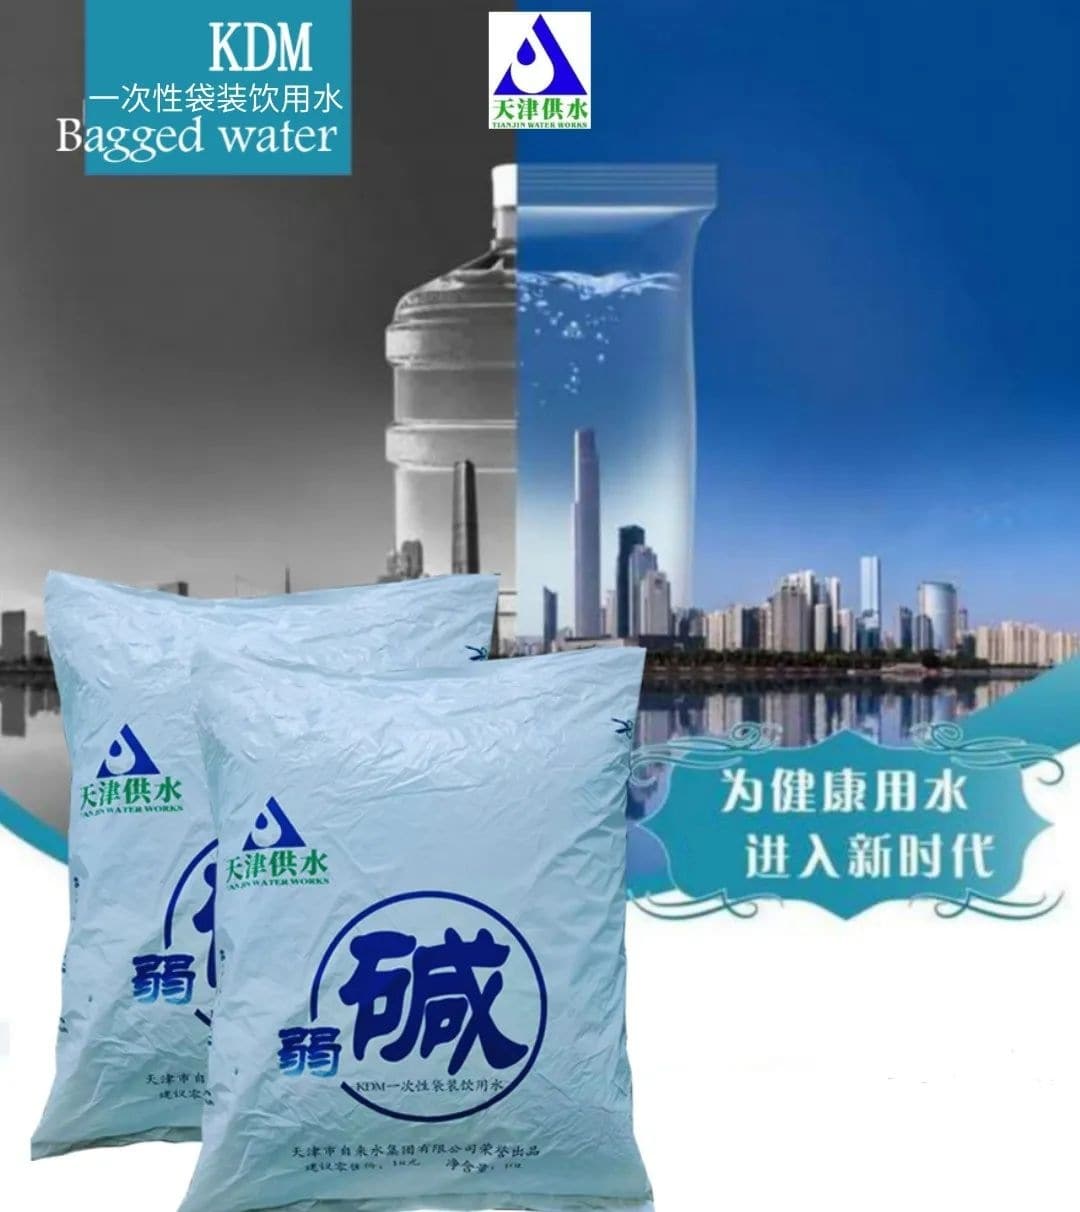 天津KDM袋装水介绍、联系方式